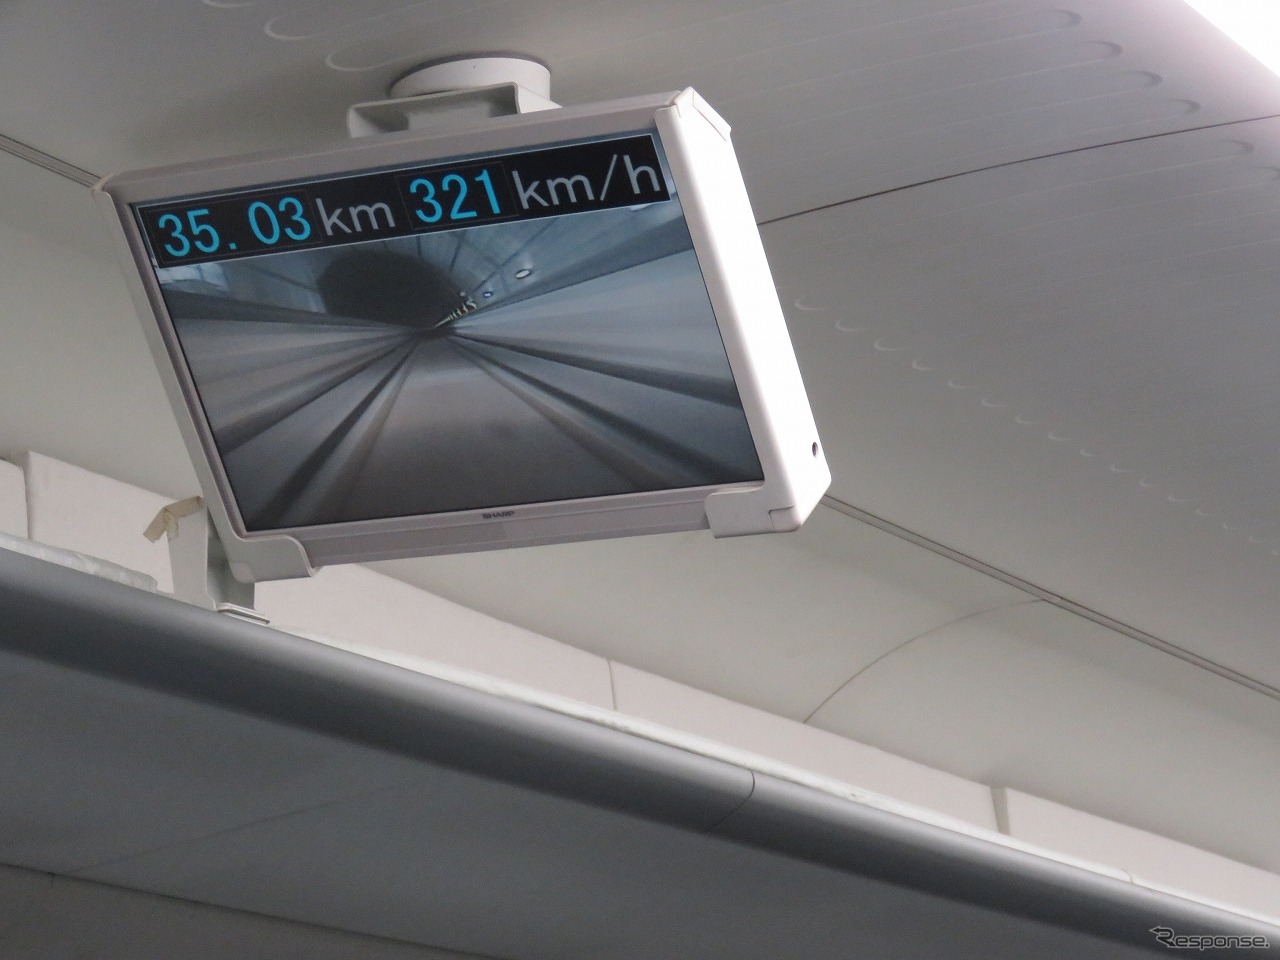 山梨リニア実験線の大半はトンネル区間。窓外の景色はほとんど見えないが、車内に設置されたディスプレイでリアルタイム撮影の動画と速度を確認することができる。